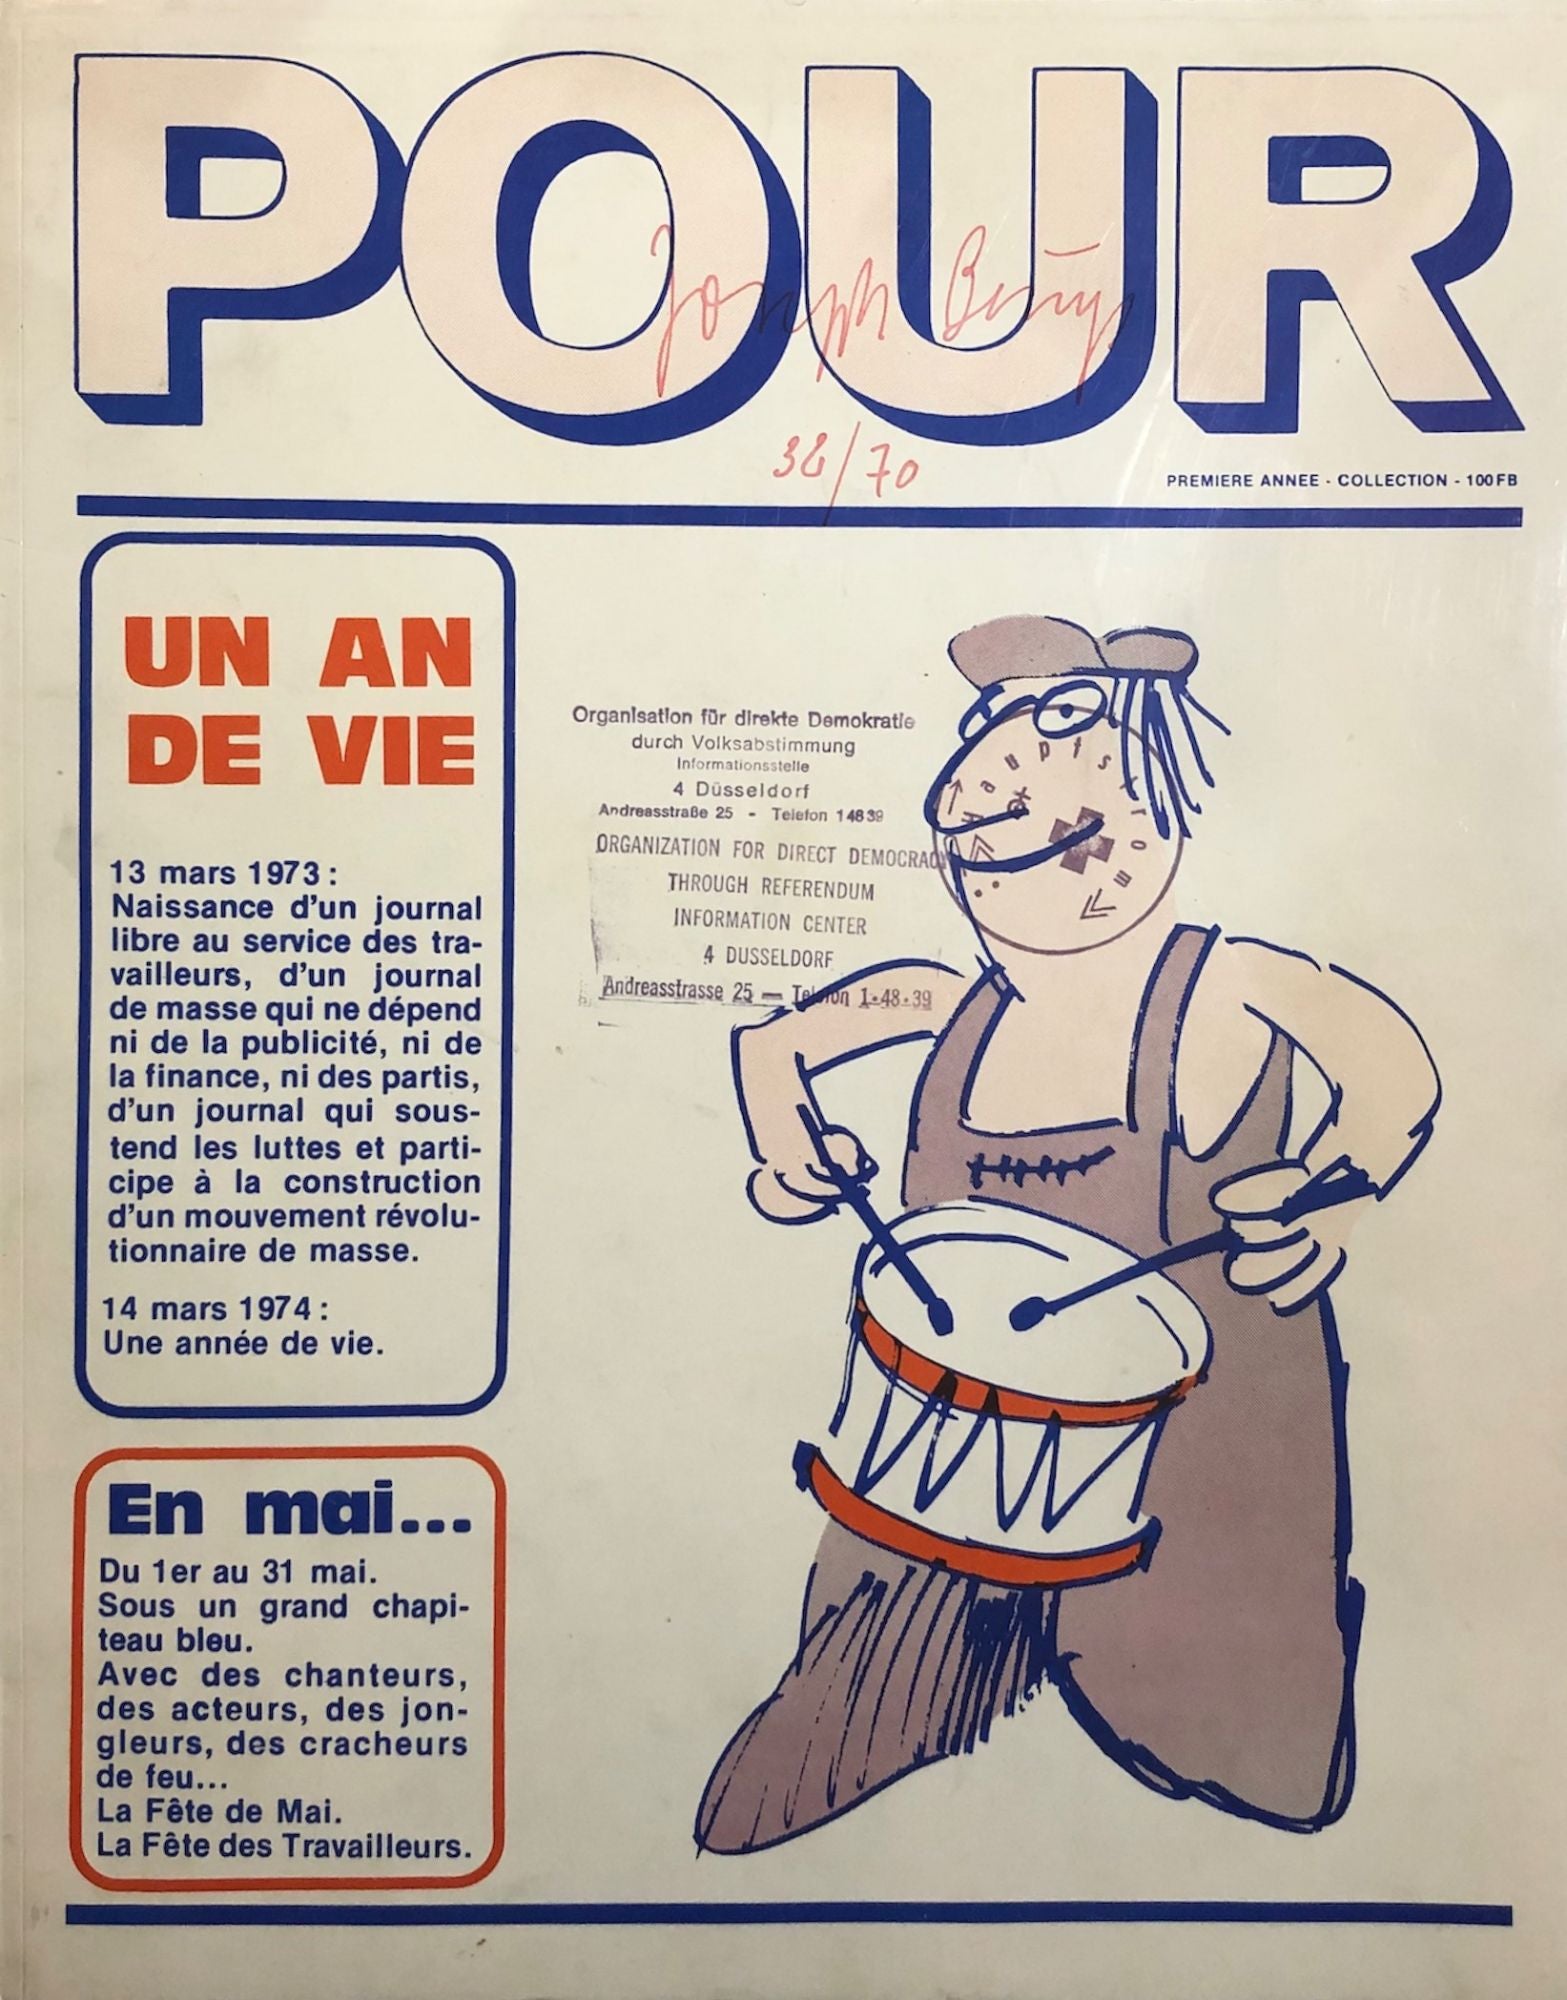 du　Peuple　Journal　Joseph　Jean-Claude　Libre　au　Edition　Service　Un　Garot　First　Pour:　Beuys,